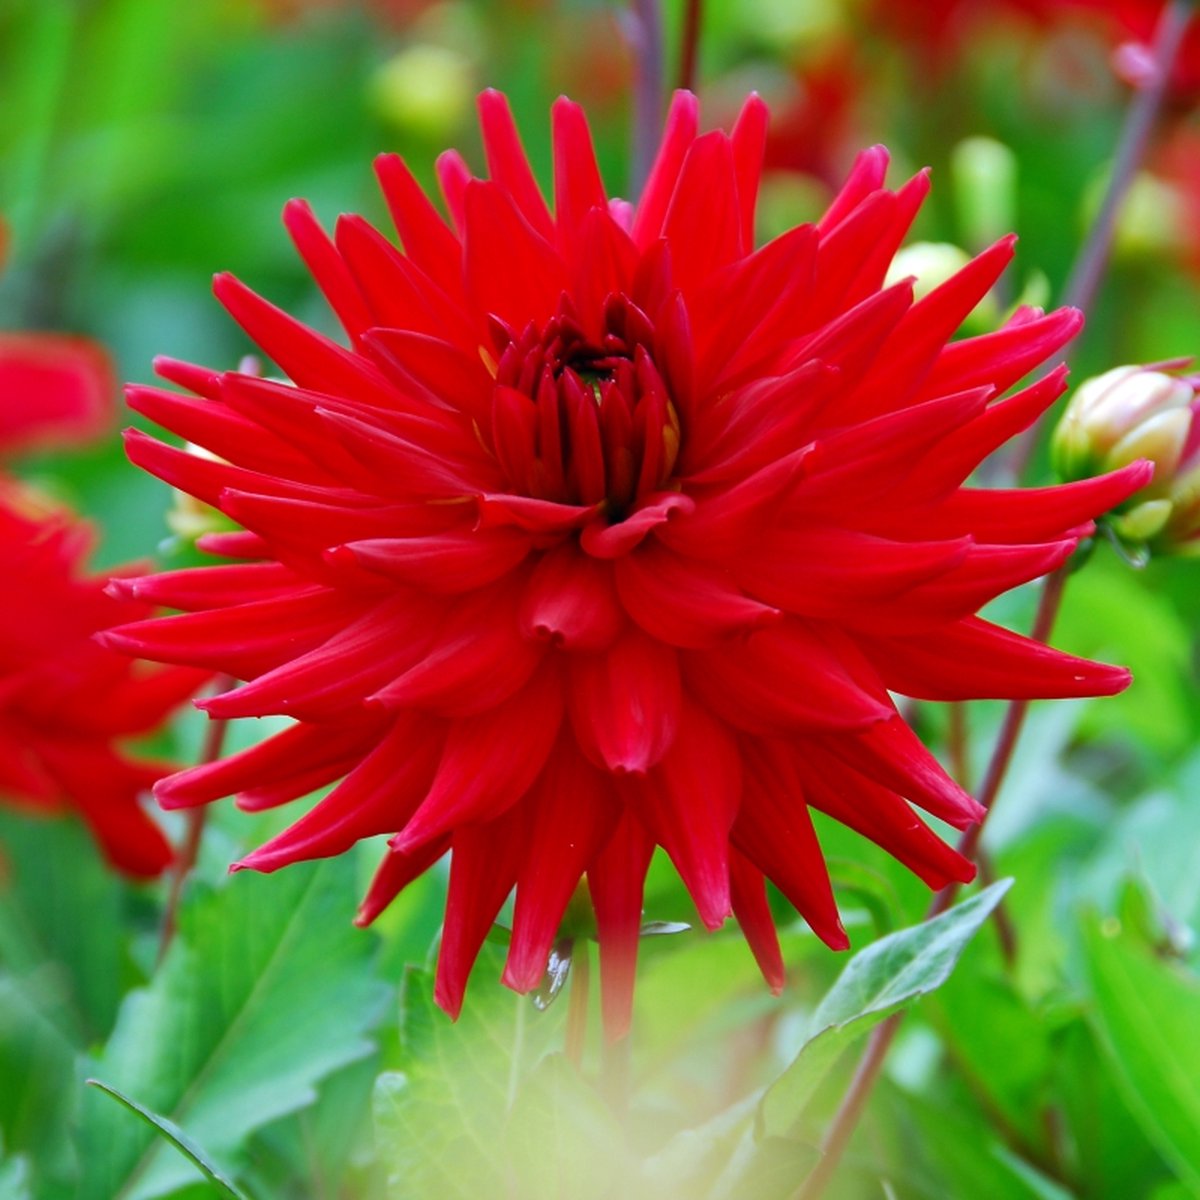 Dahlia Red Pygmy | 6 stuks | Cactus Dahlia | Knol | Geschikt voor in Pot | Rood | Dahlia Knollen van Top Kwaliteit | 100% Bloeigarantie | QFB Gardening